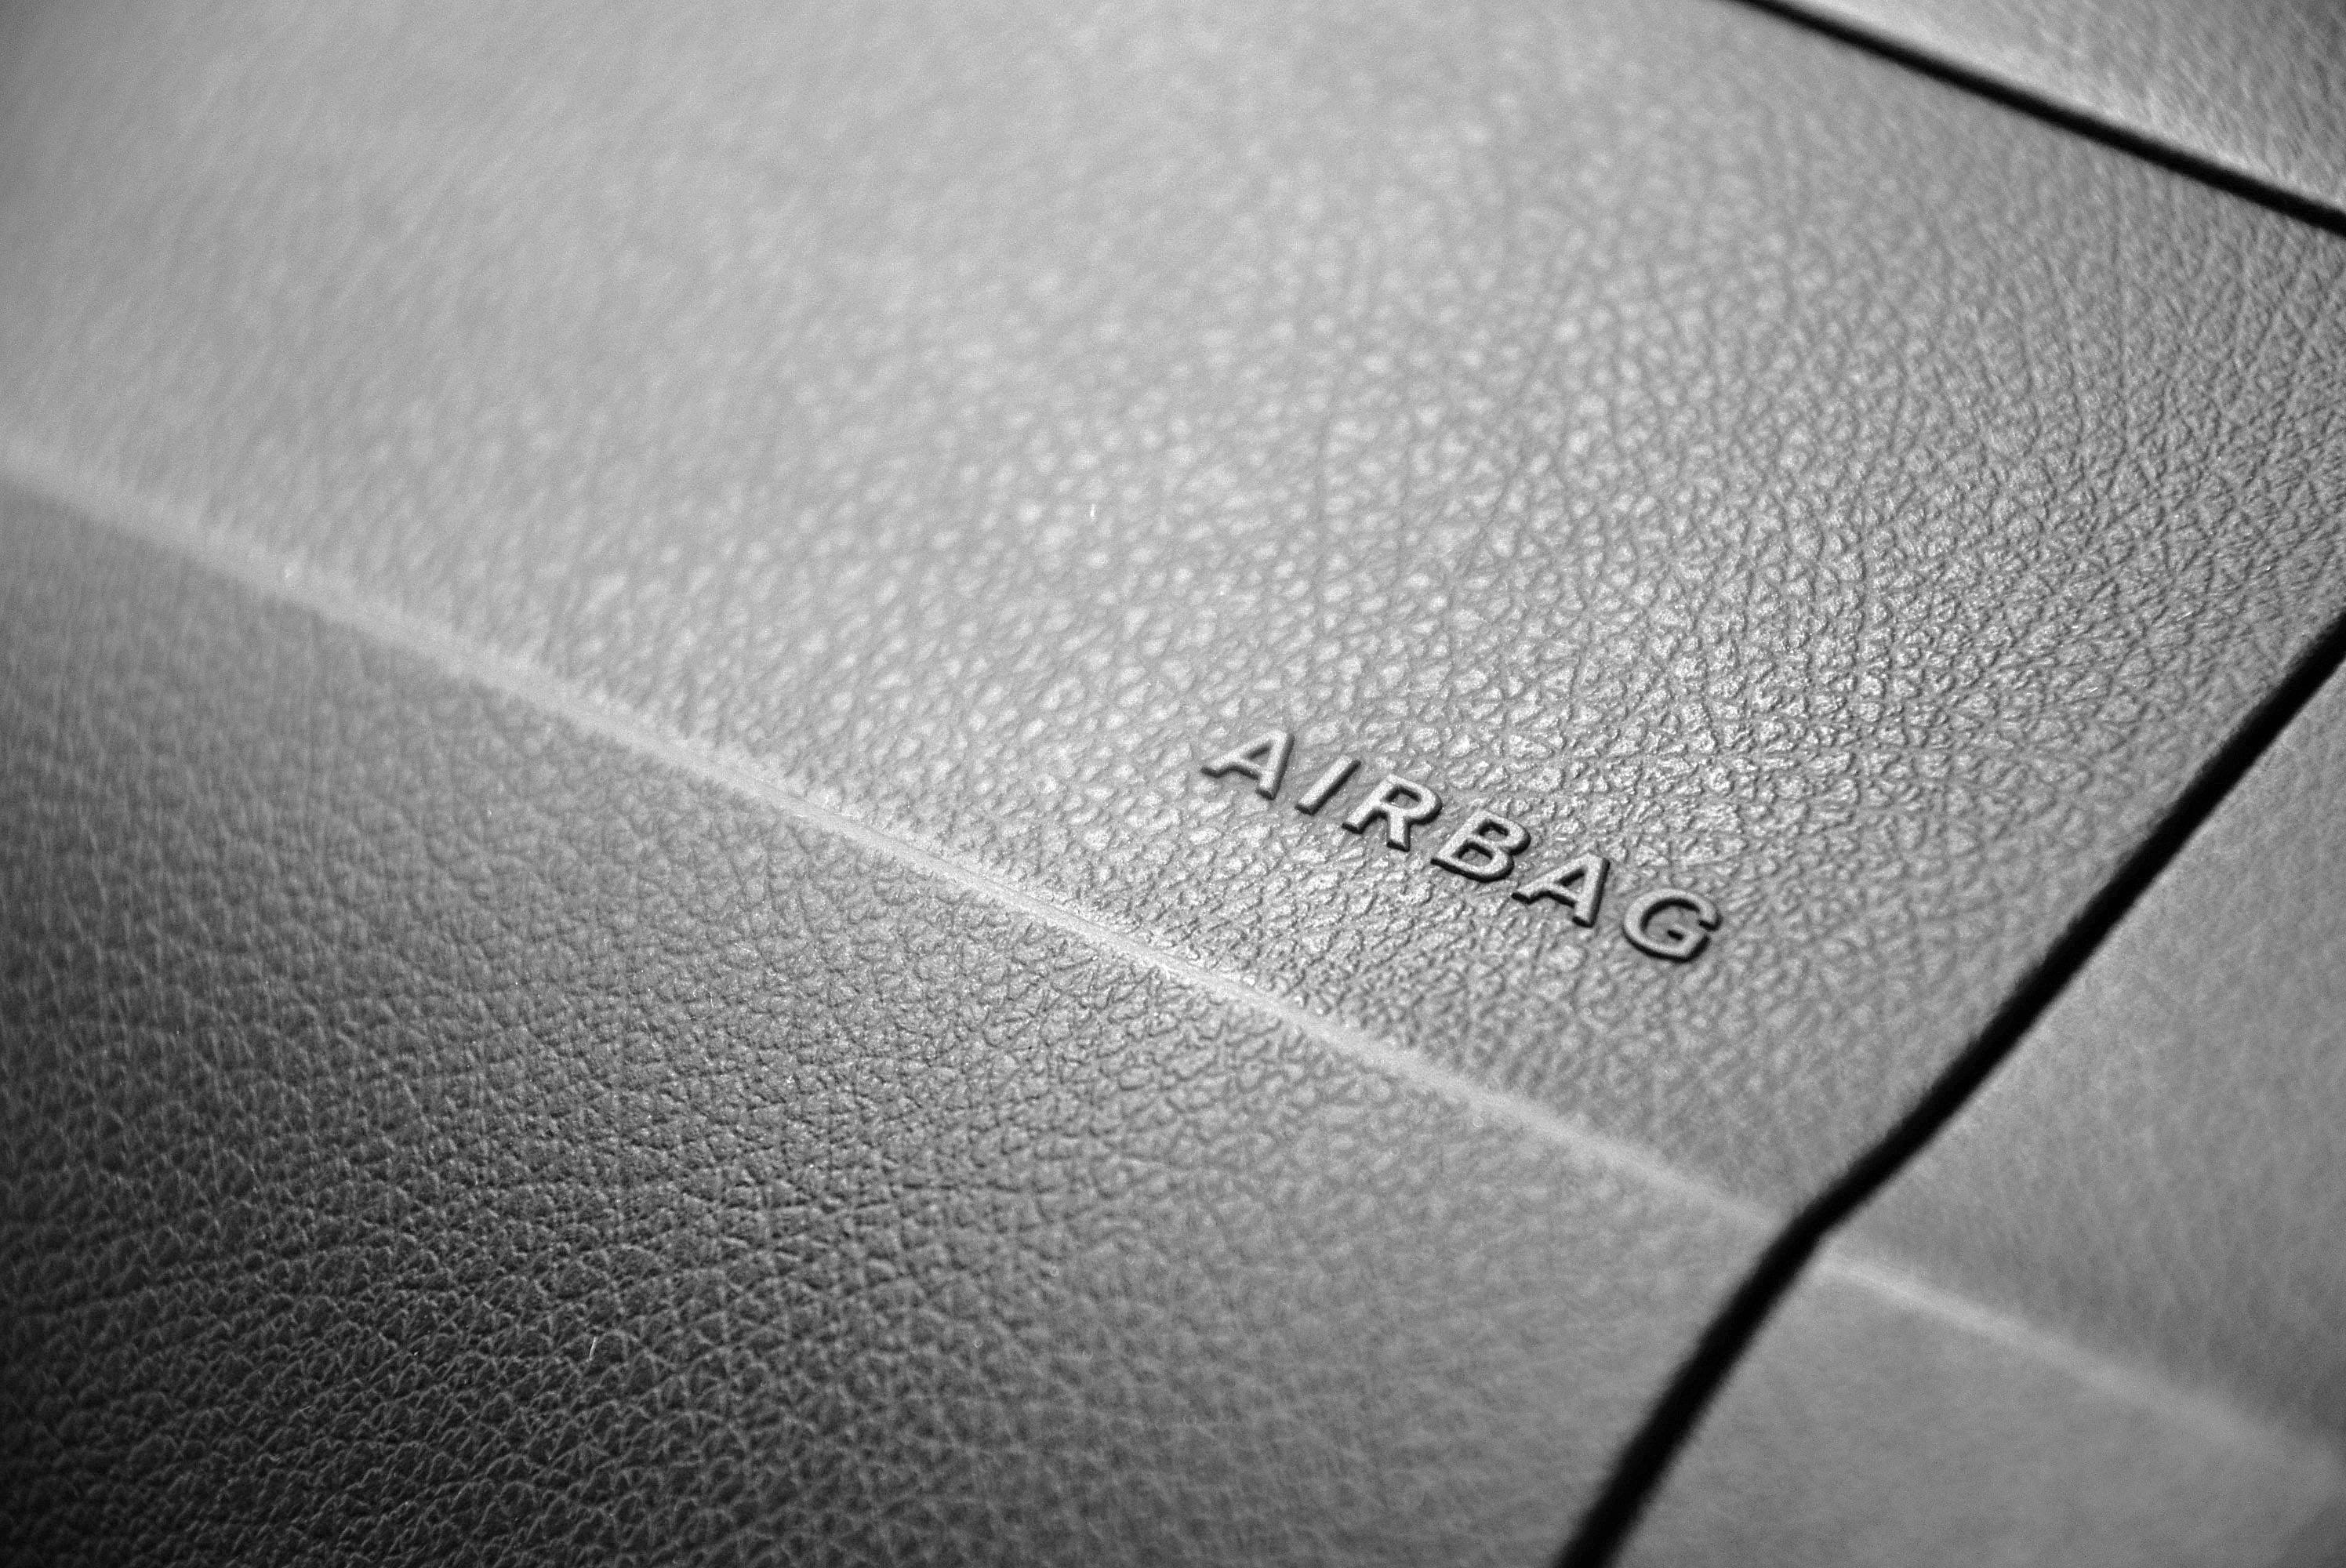 L'airbag és un element de seguretat bàsic als vehicles